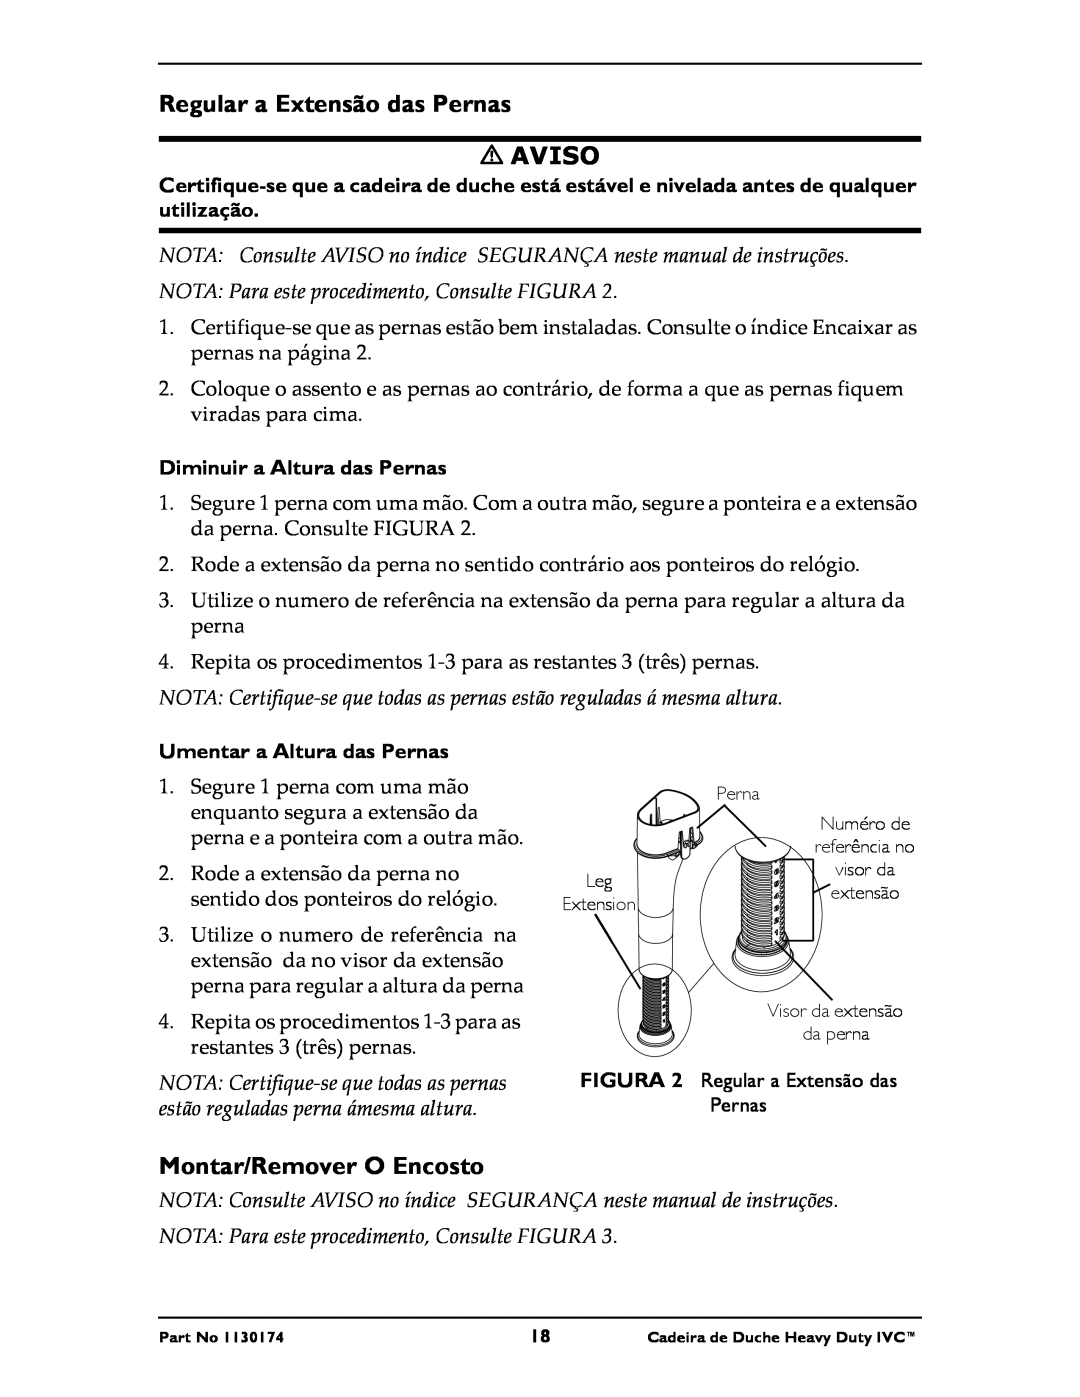 Invacare 9780E, 9781E instruction sheet Regular a Extensão das Pernas, Montar/Remover O Encosto, Aviso 